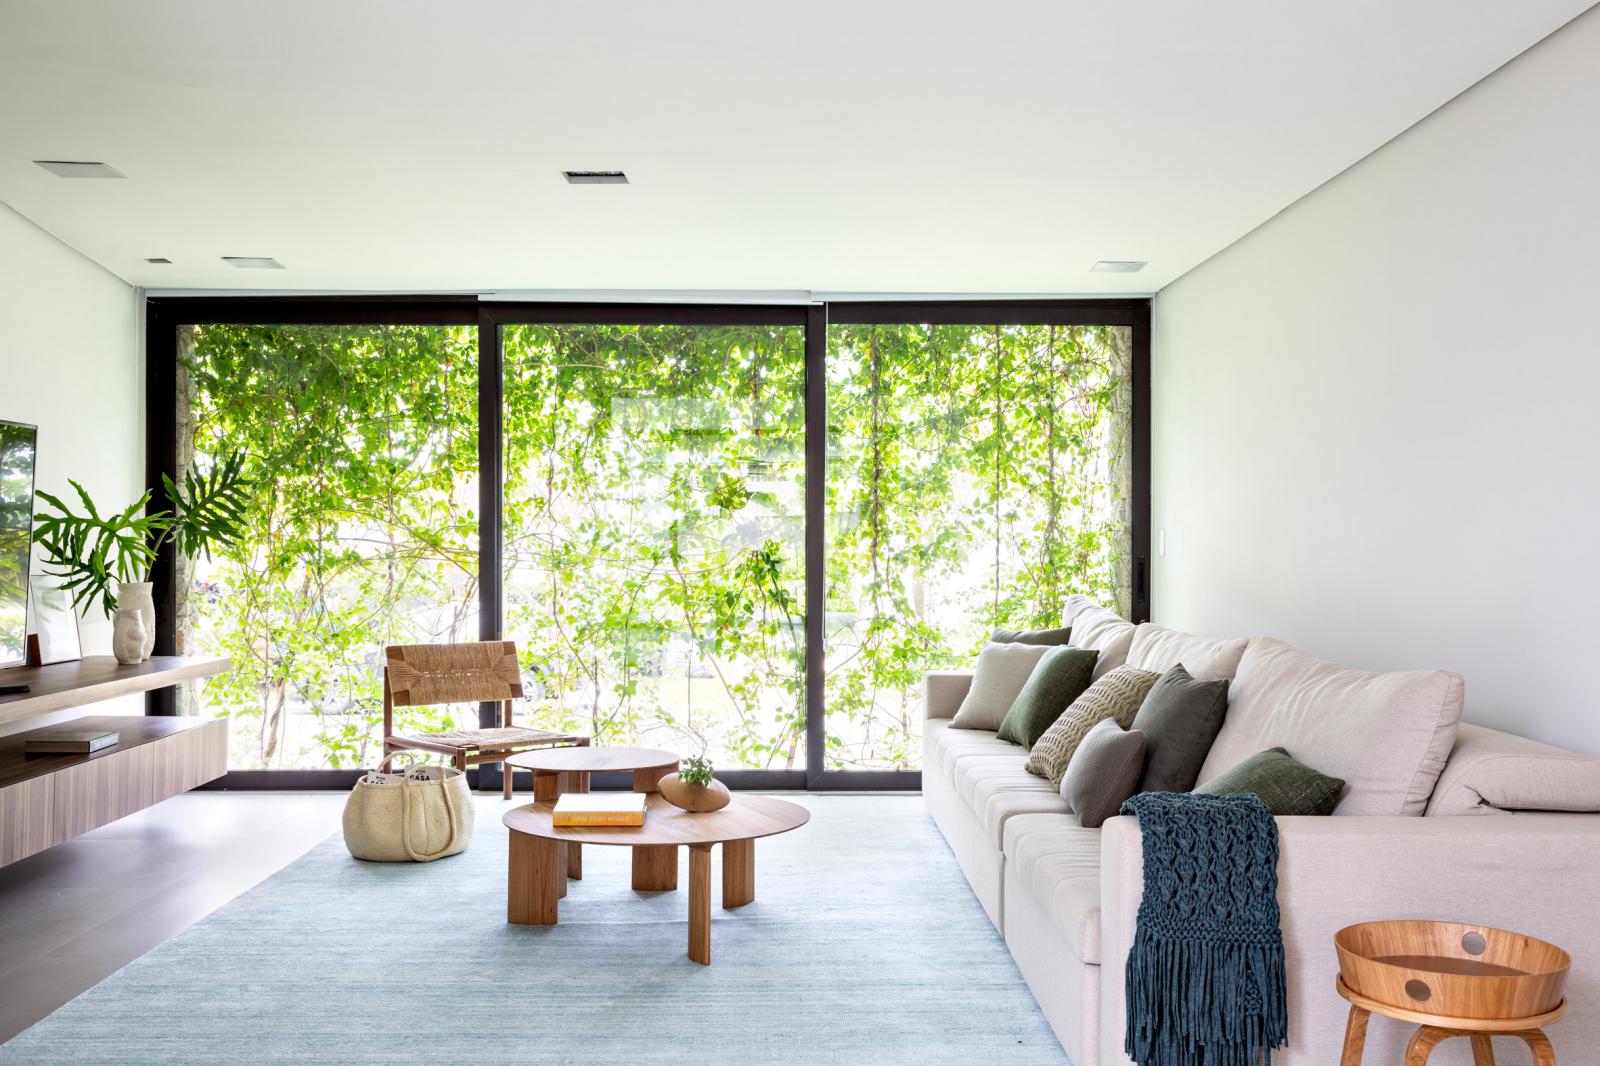 hình ảnh phòng khách ngập tràn ánh sáng với sofa trắng, tủ kệ tivi bằng gỗ, cửa kính trong suốt phản chiếu khung cảnh thiên nhiên xanh mát bên ngoài